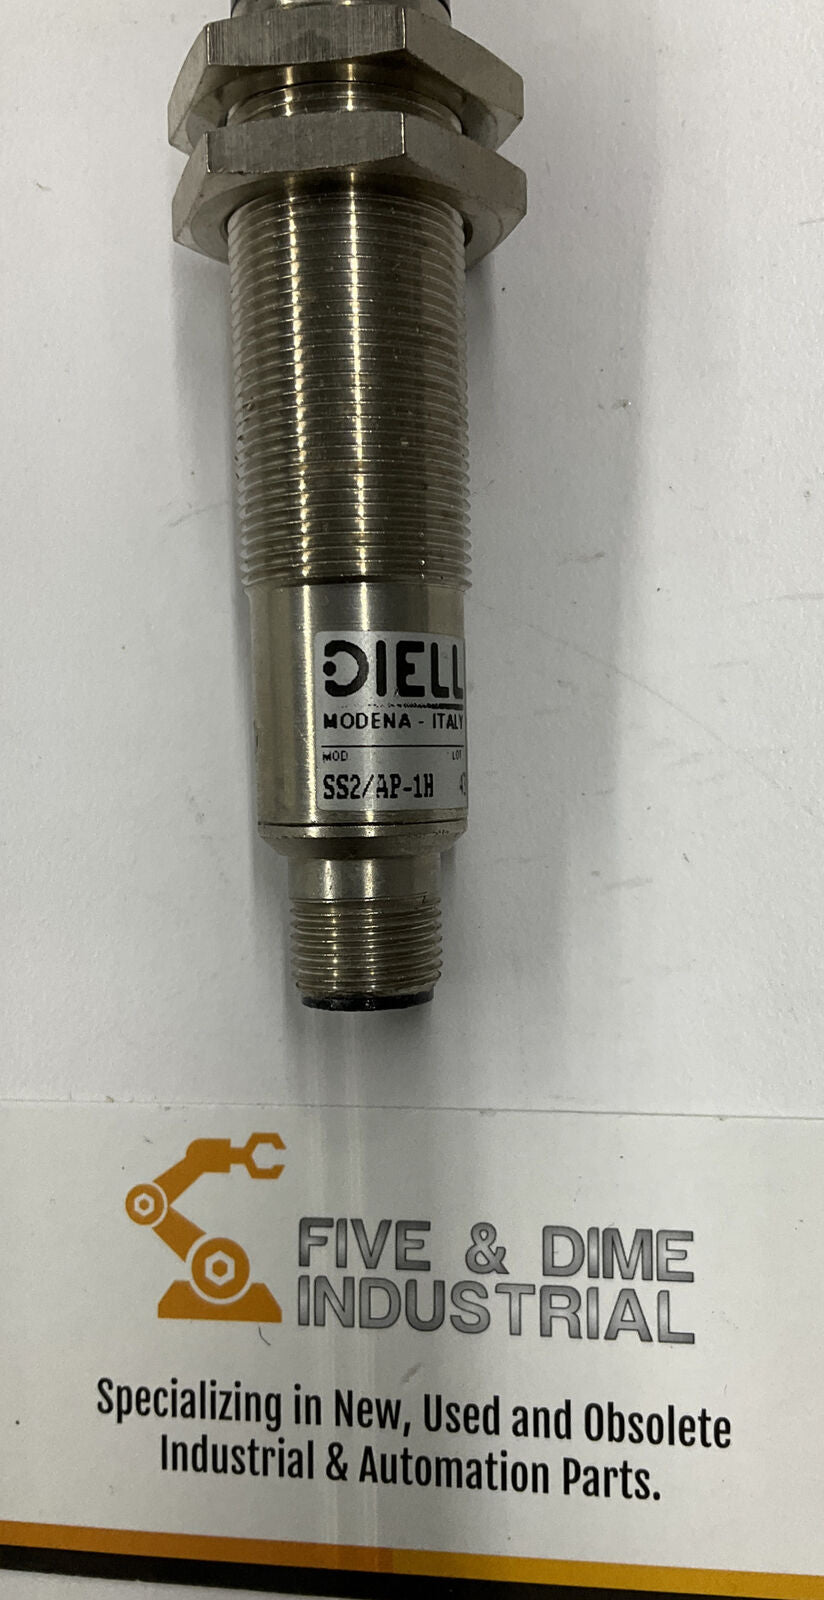 Diell / Miro Detectors SS2 / AP-1H Optical Sensor 10-30 VDC (CL160)